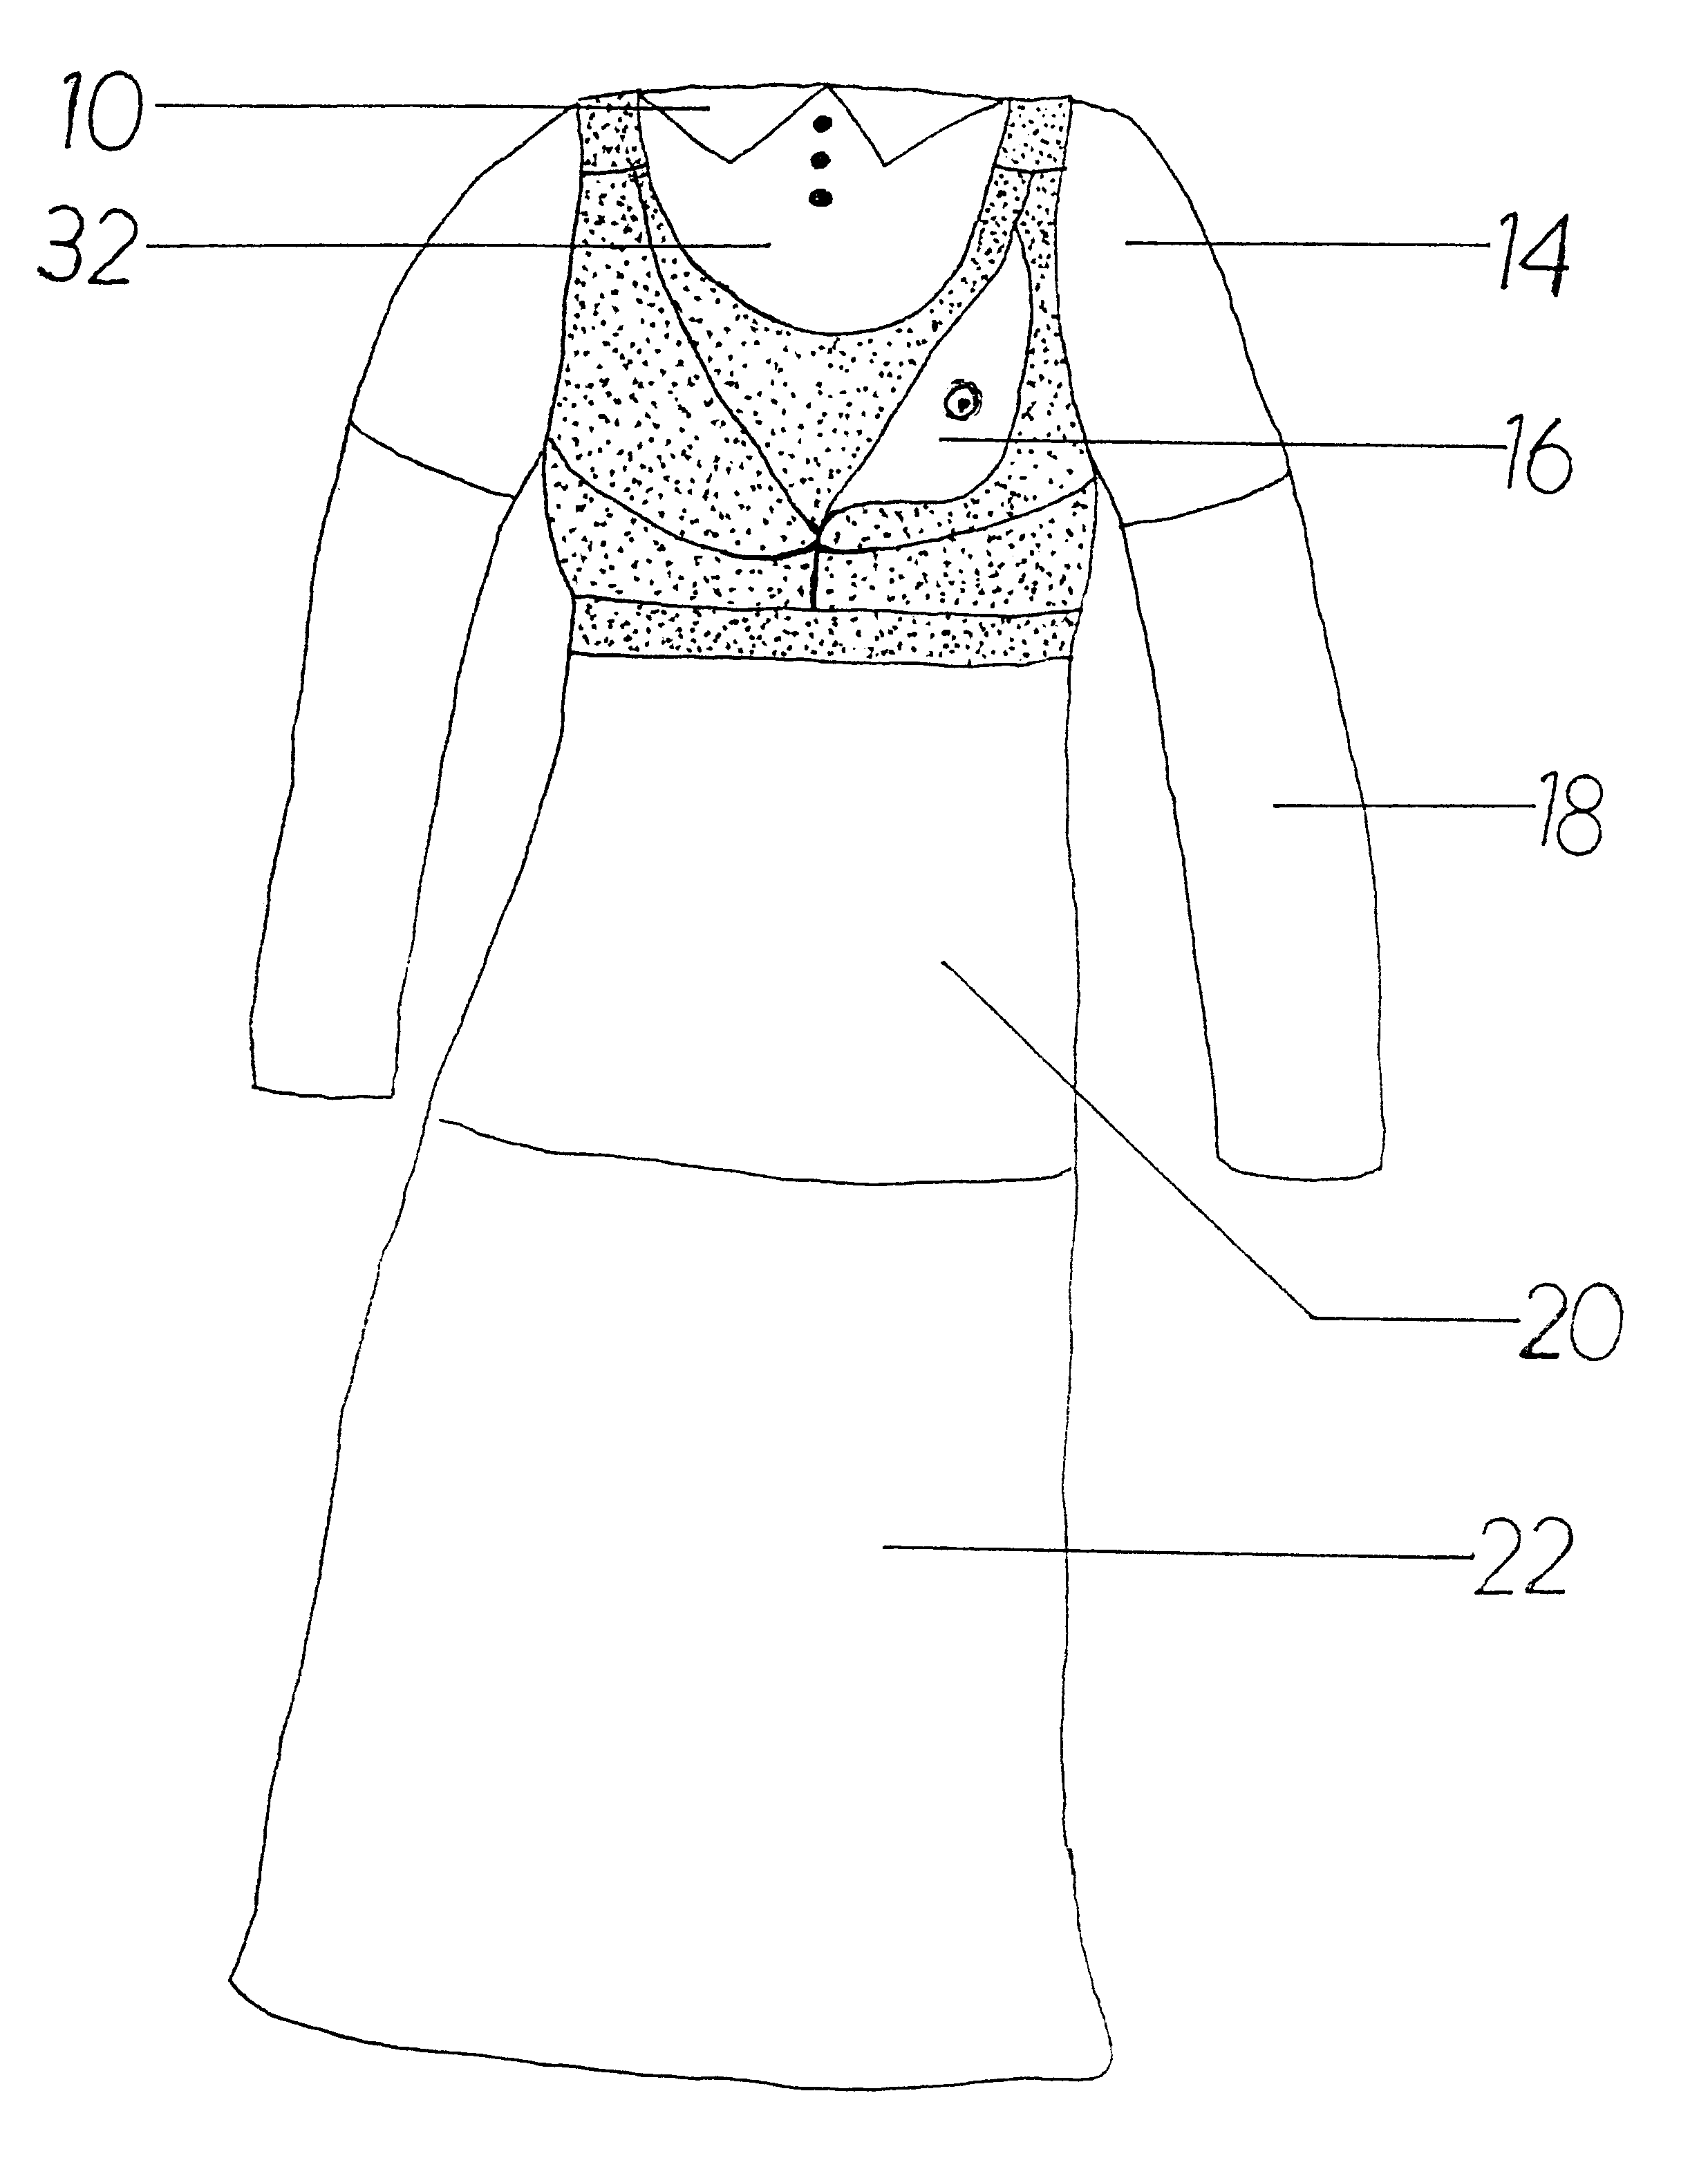 Nursing brassiere garment